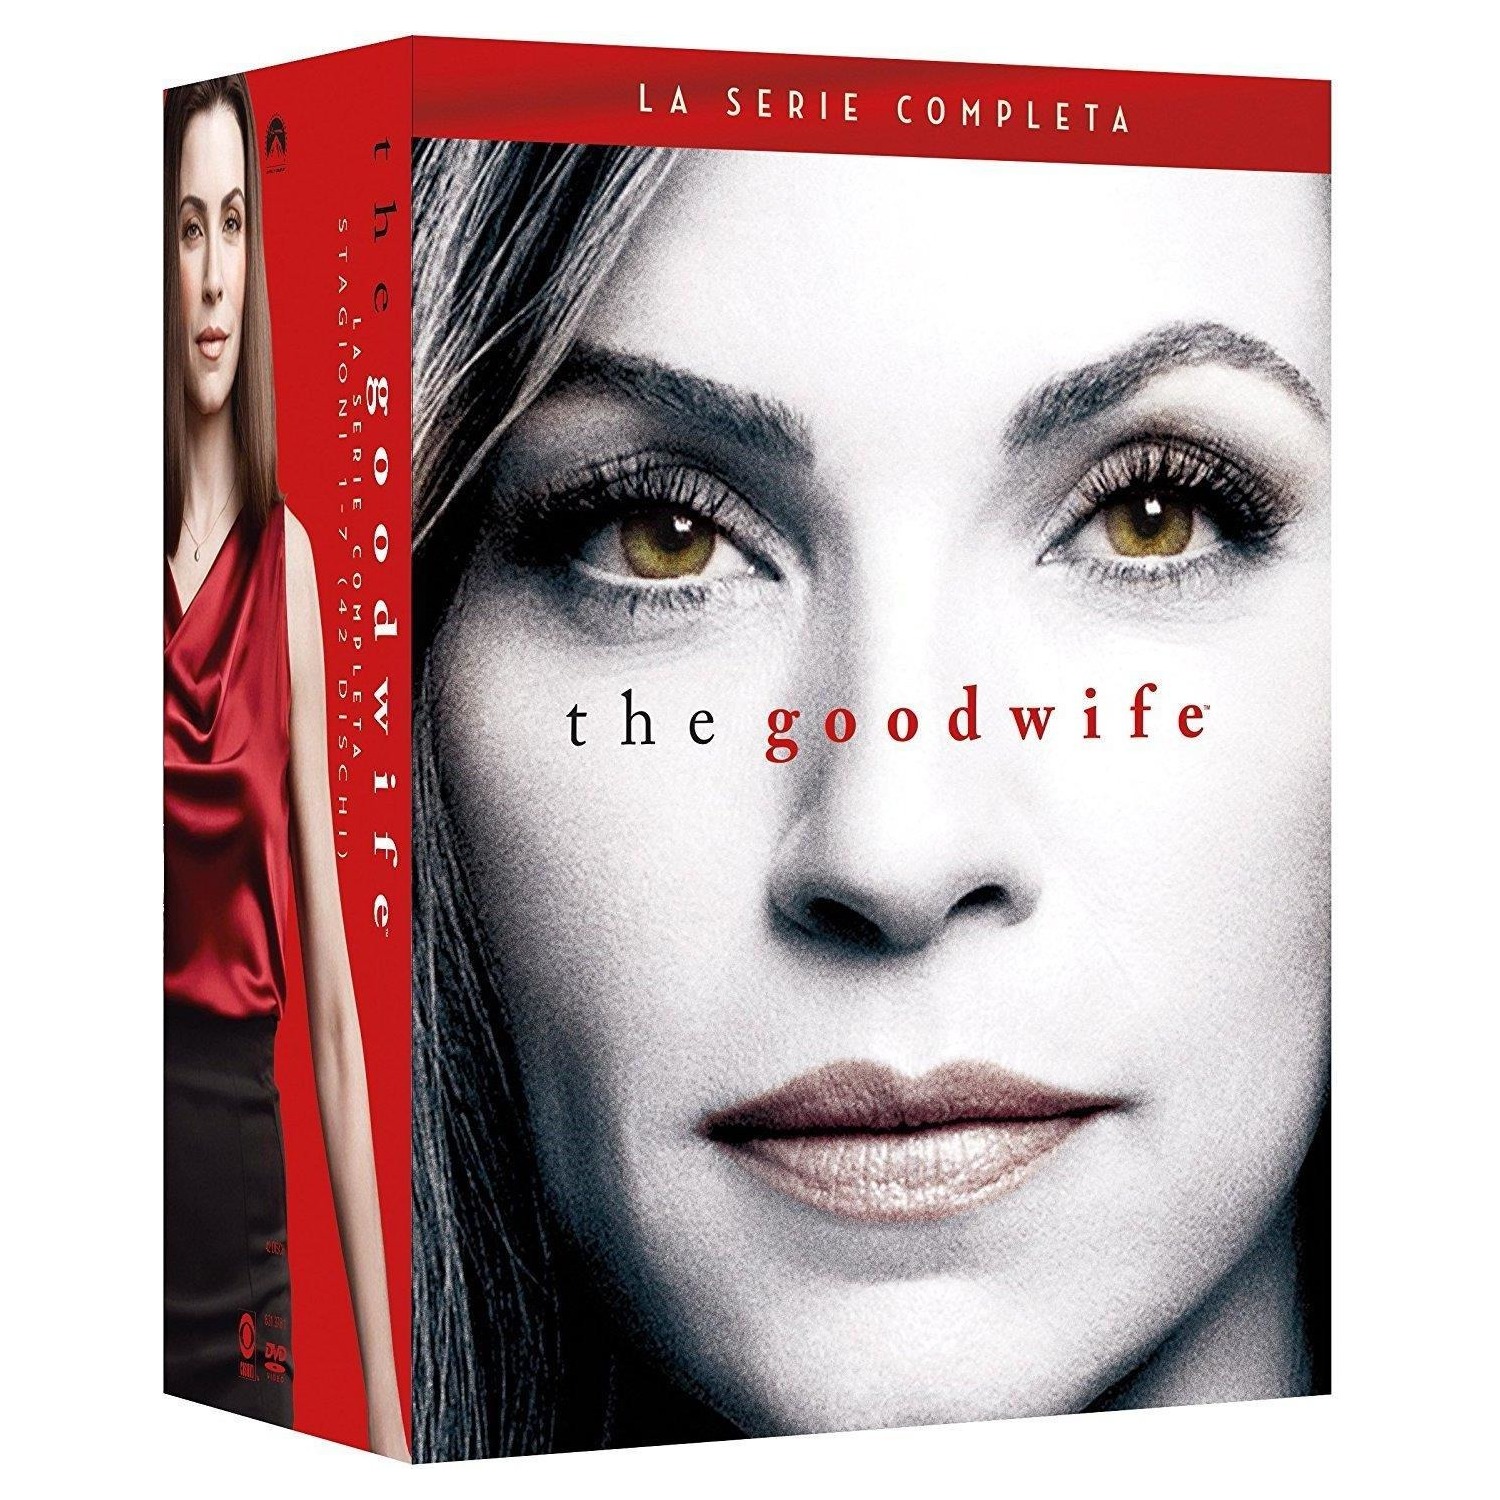 Immagine per Serie TV DVD The good wife 1-7 - La Serie completa da DIMOStore